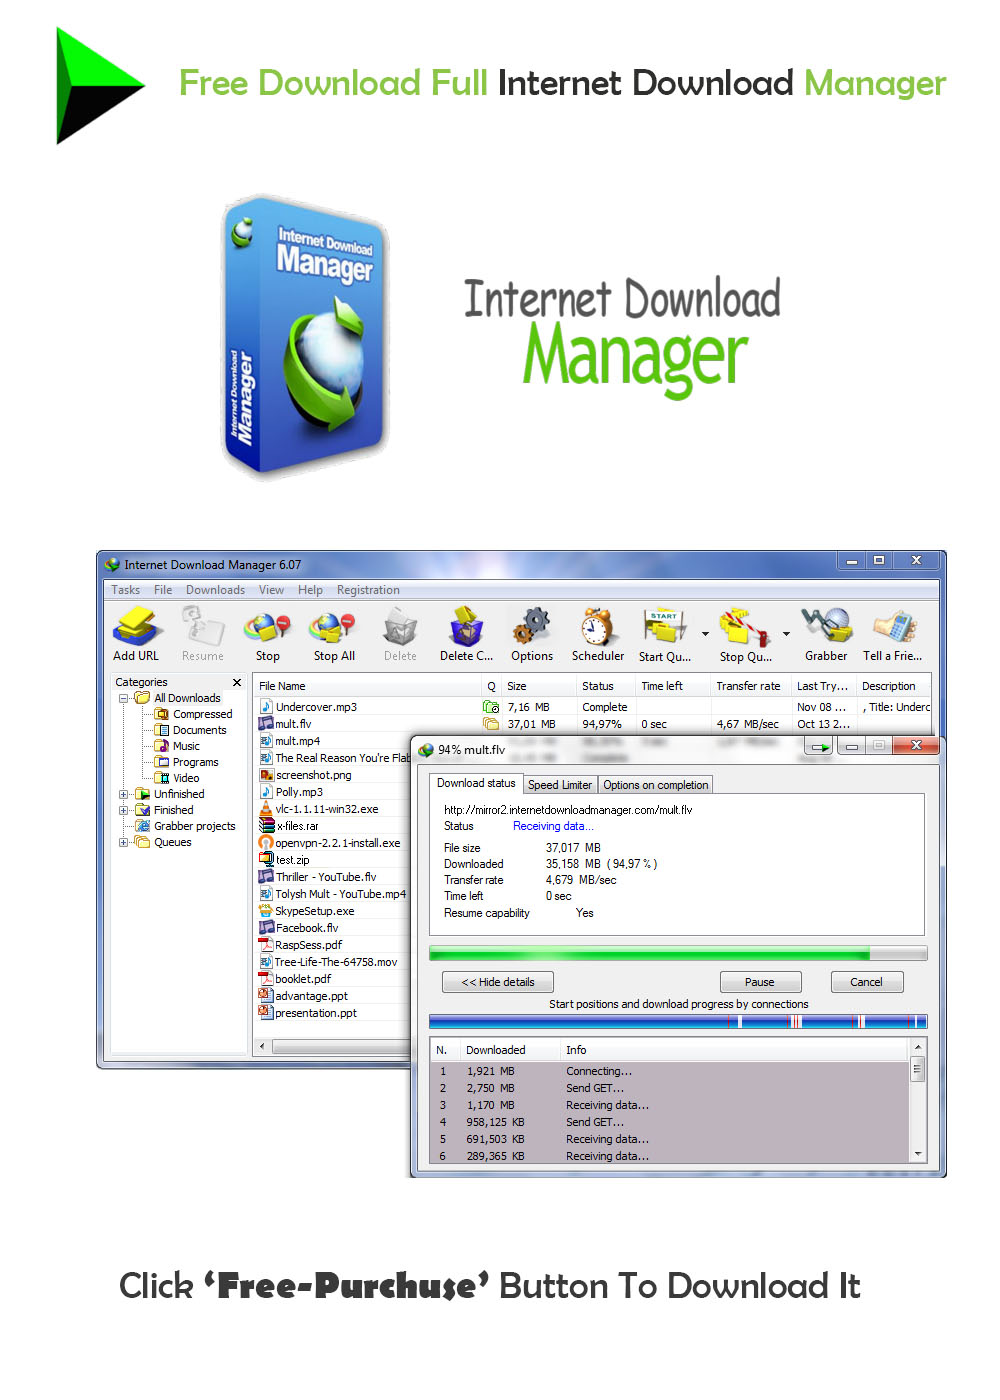 internet download manager crack version free download for windows 8.1